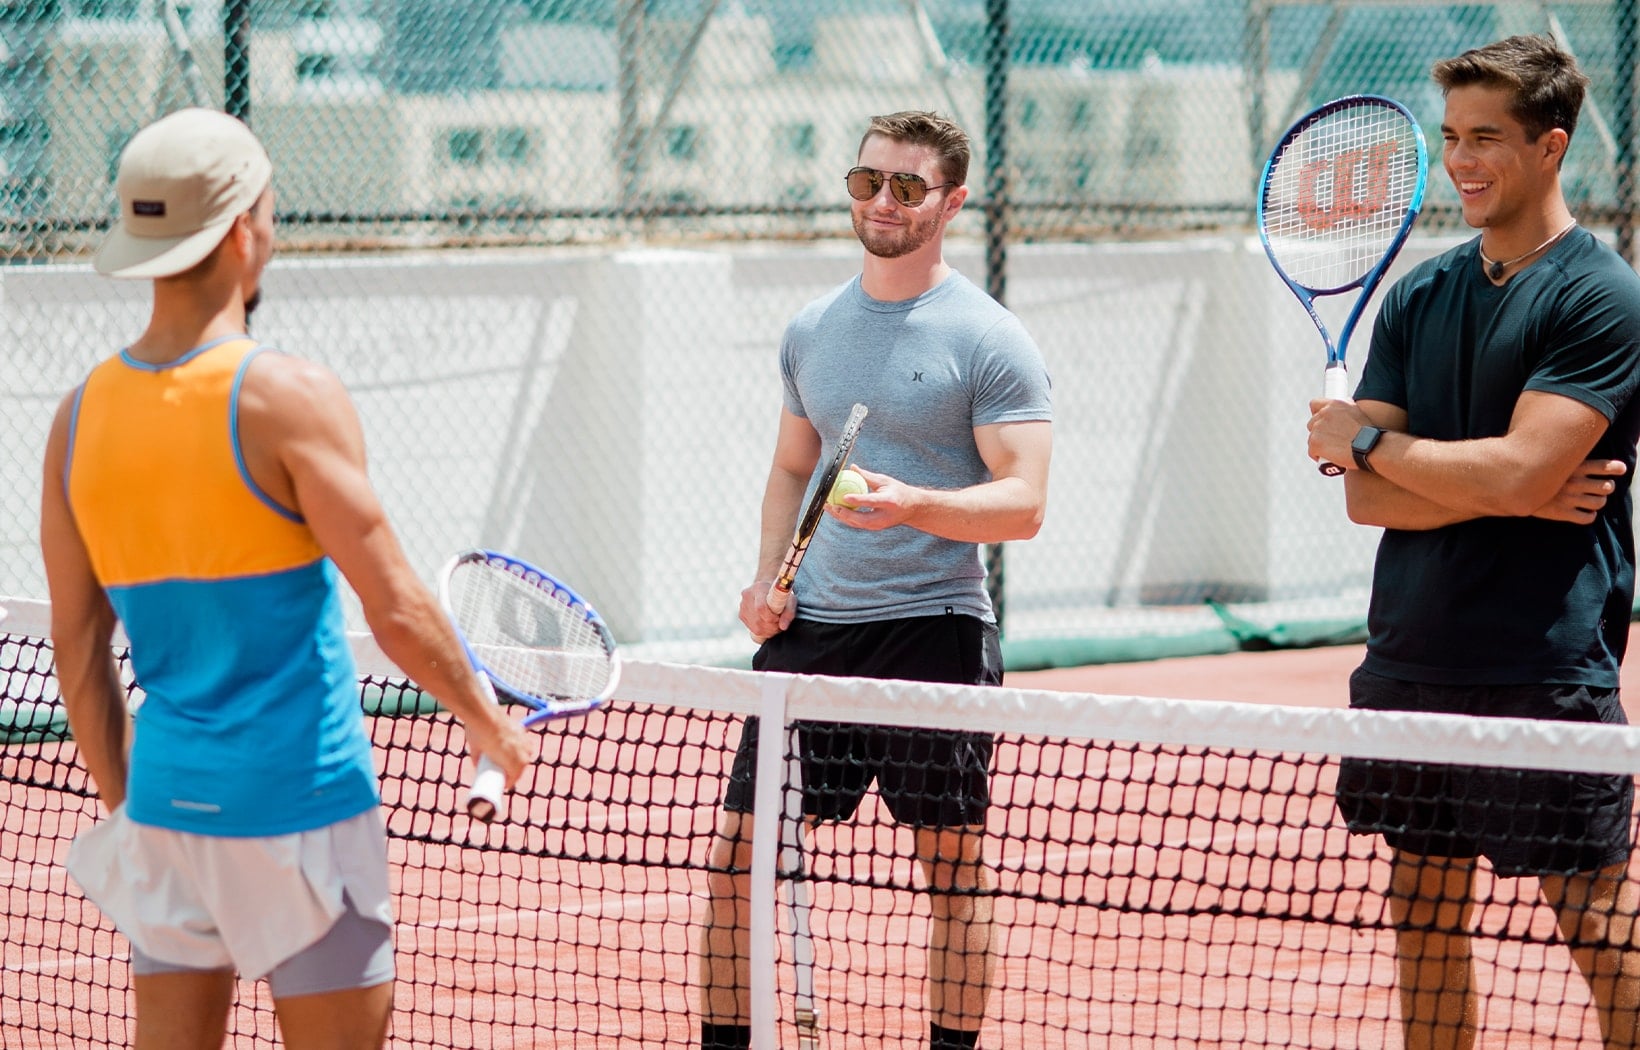 Guys on Tennis court standing near net